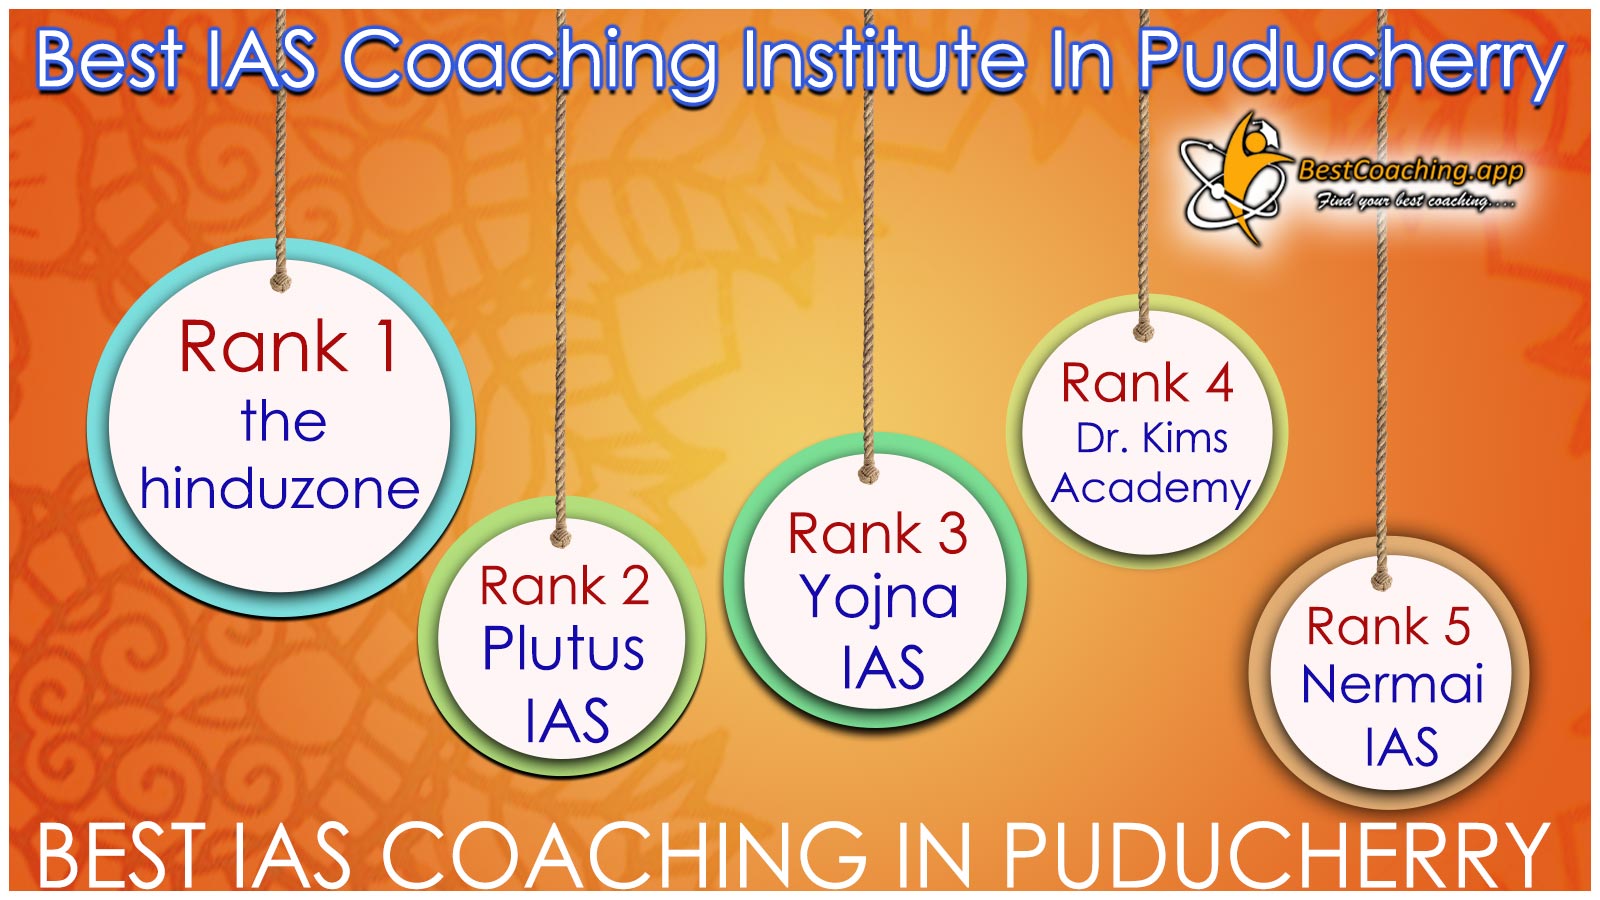 Best IAS Coaching Institute In Puducherry